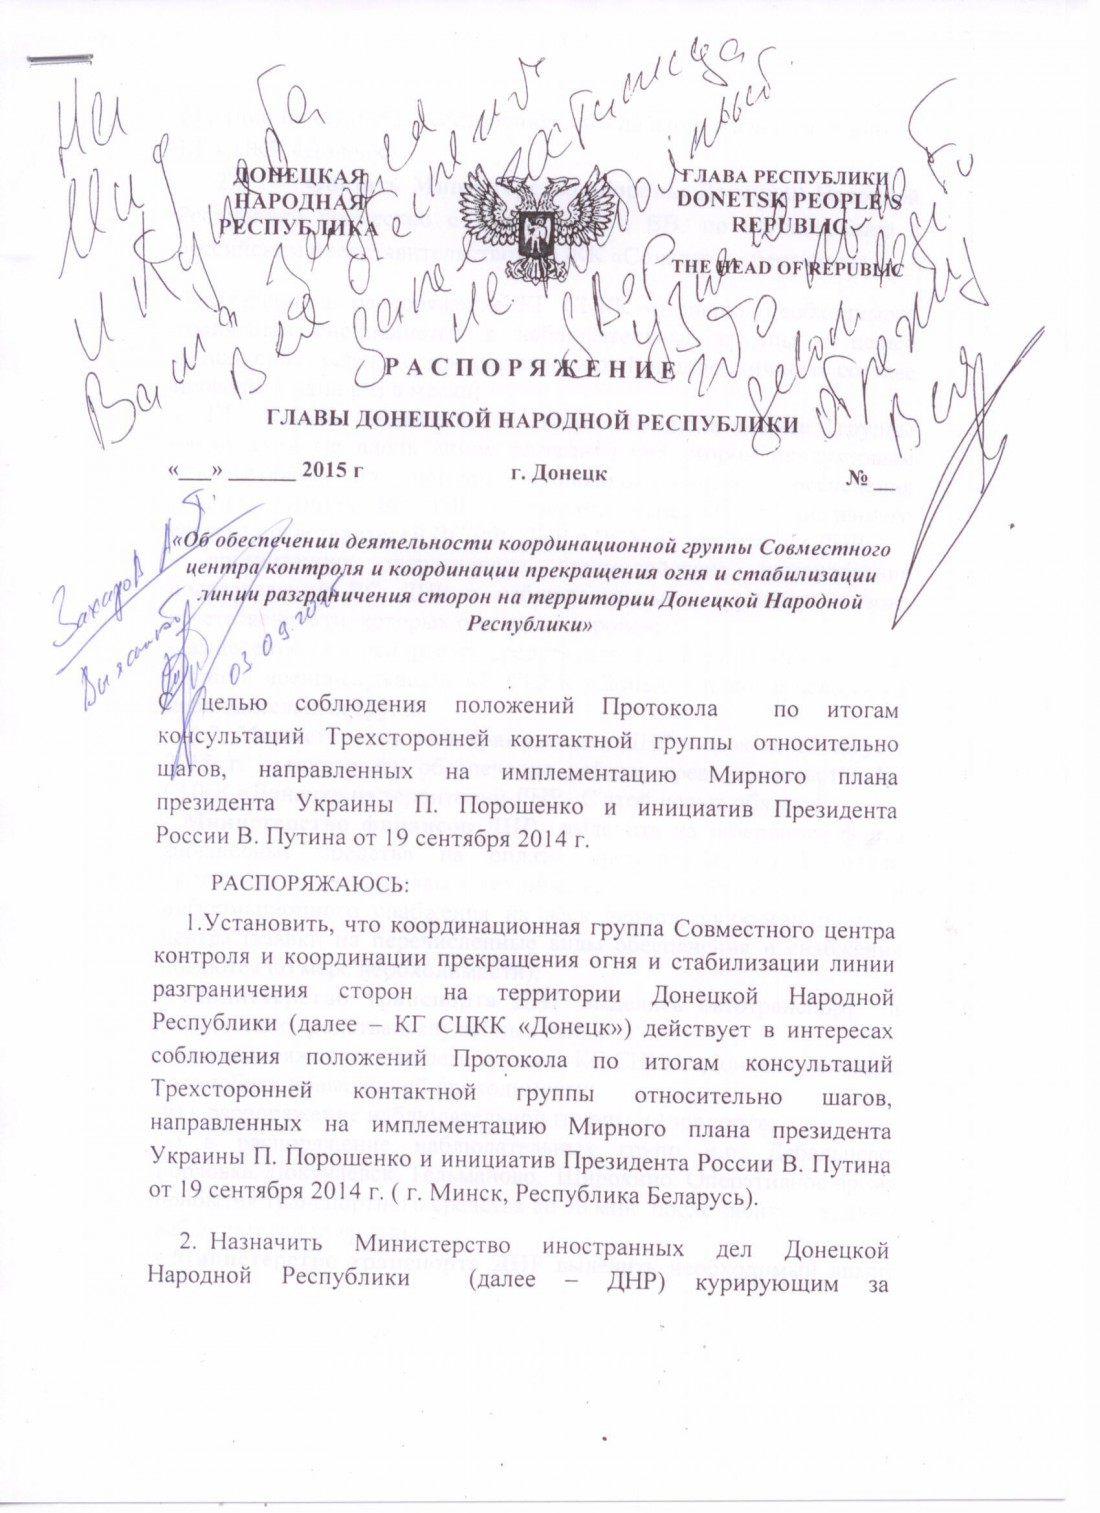 Також в архіві є звіт про соціально-економічний стан міст і районів ДНР за 27 серпня 2015 року